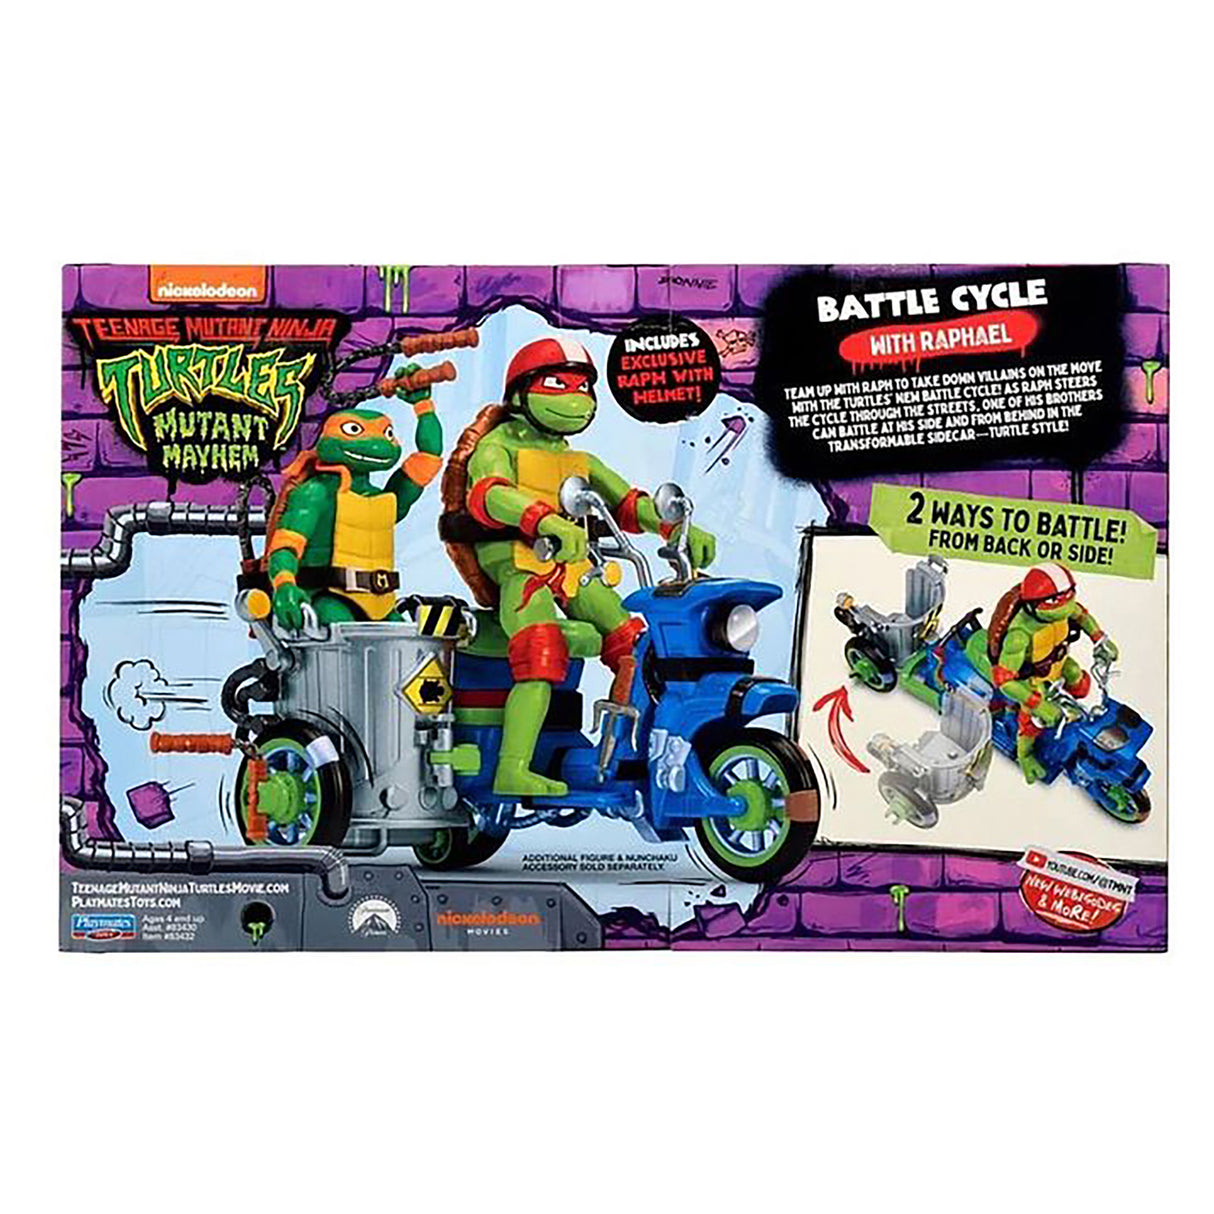 Teenage Mutant Ninja Turtles Movie Vehicle with Figure - Raphael